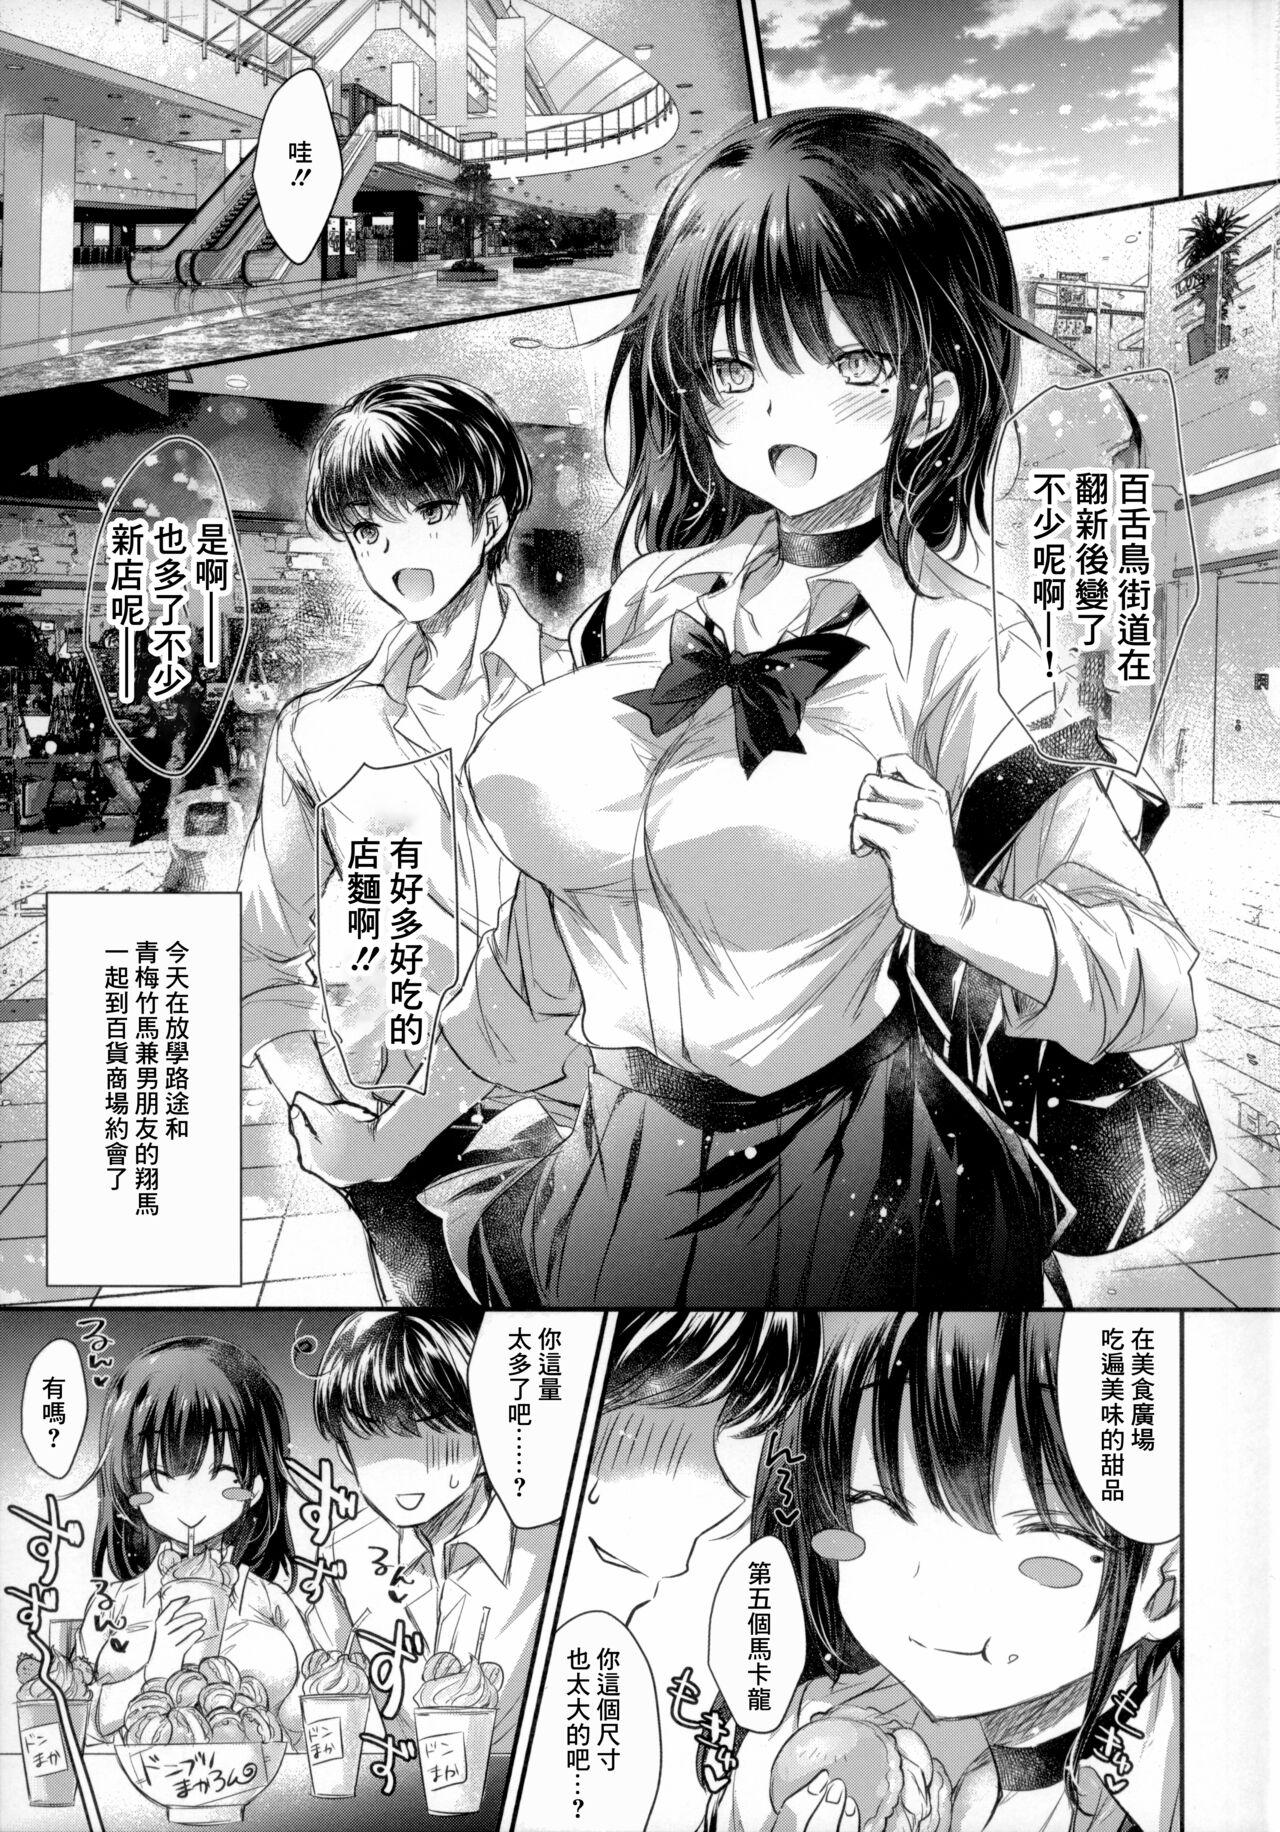 T Girl GARIGARI 112 Yofukashi Suru Hodo, Kimi ga Suki. 2 - Original 18 Porn - Page 3